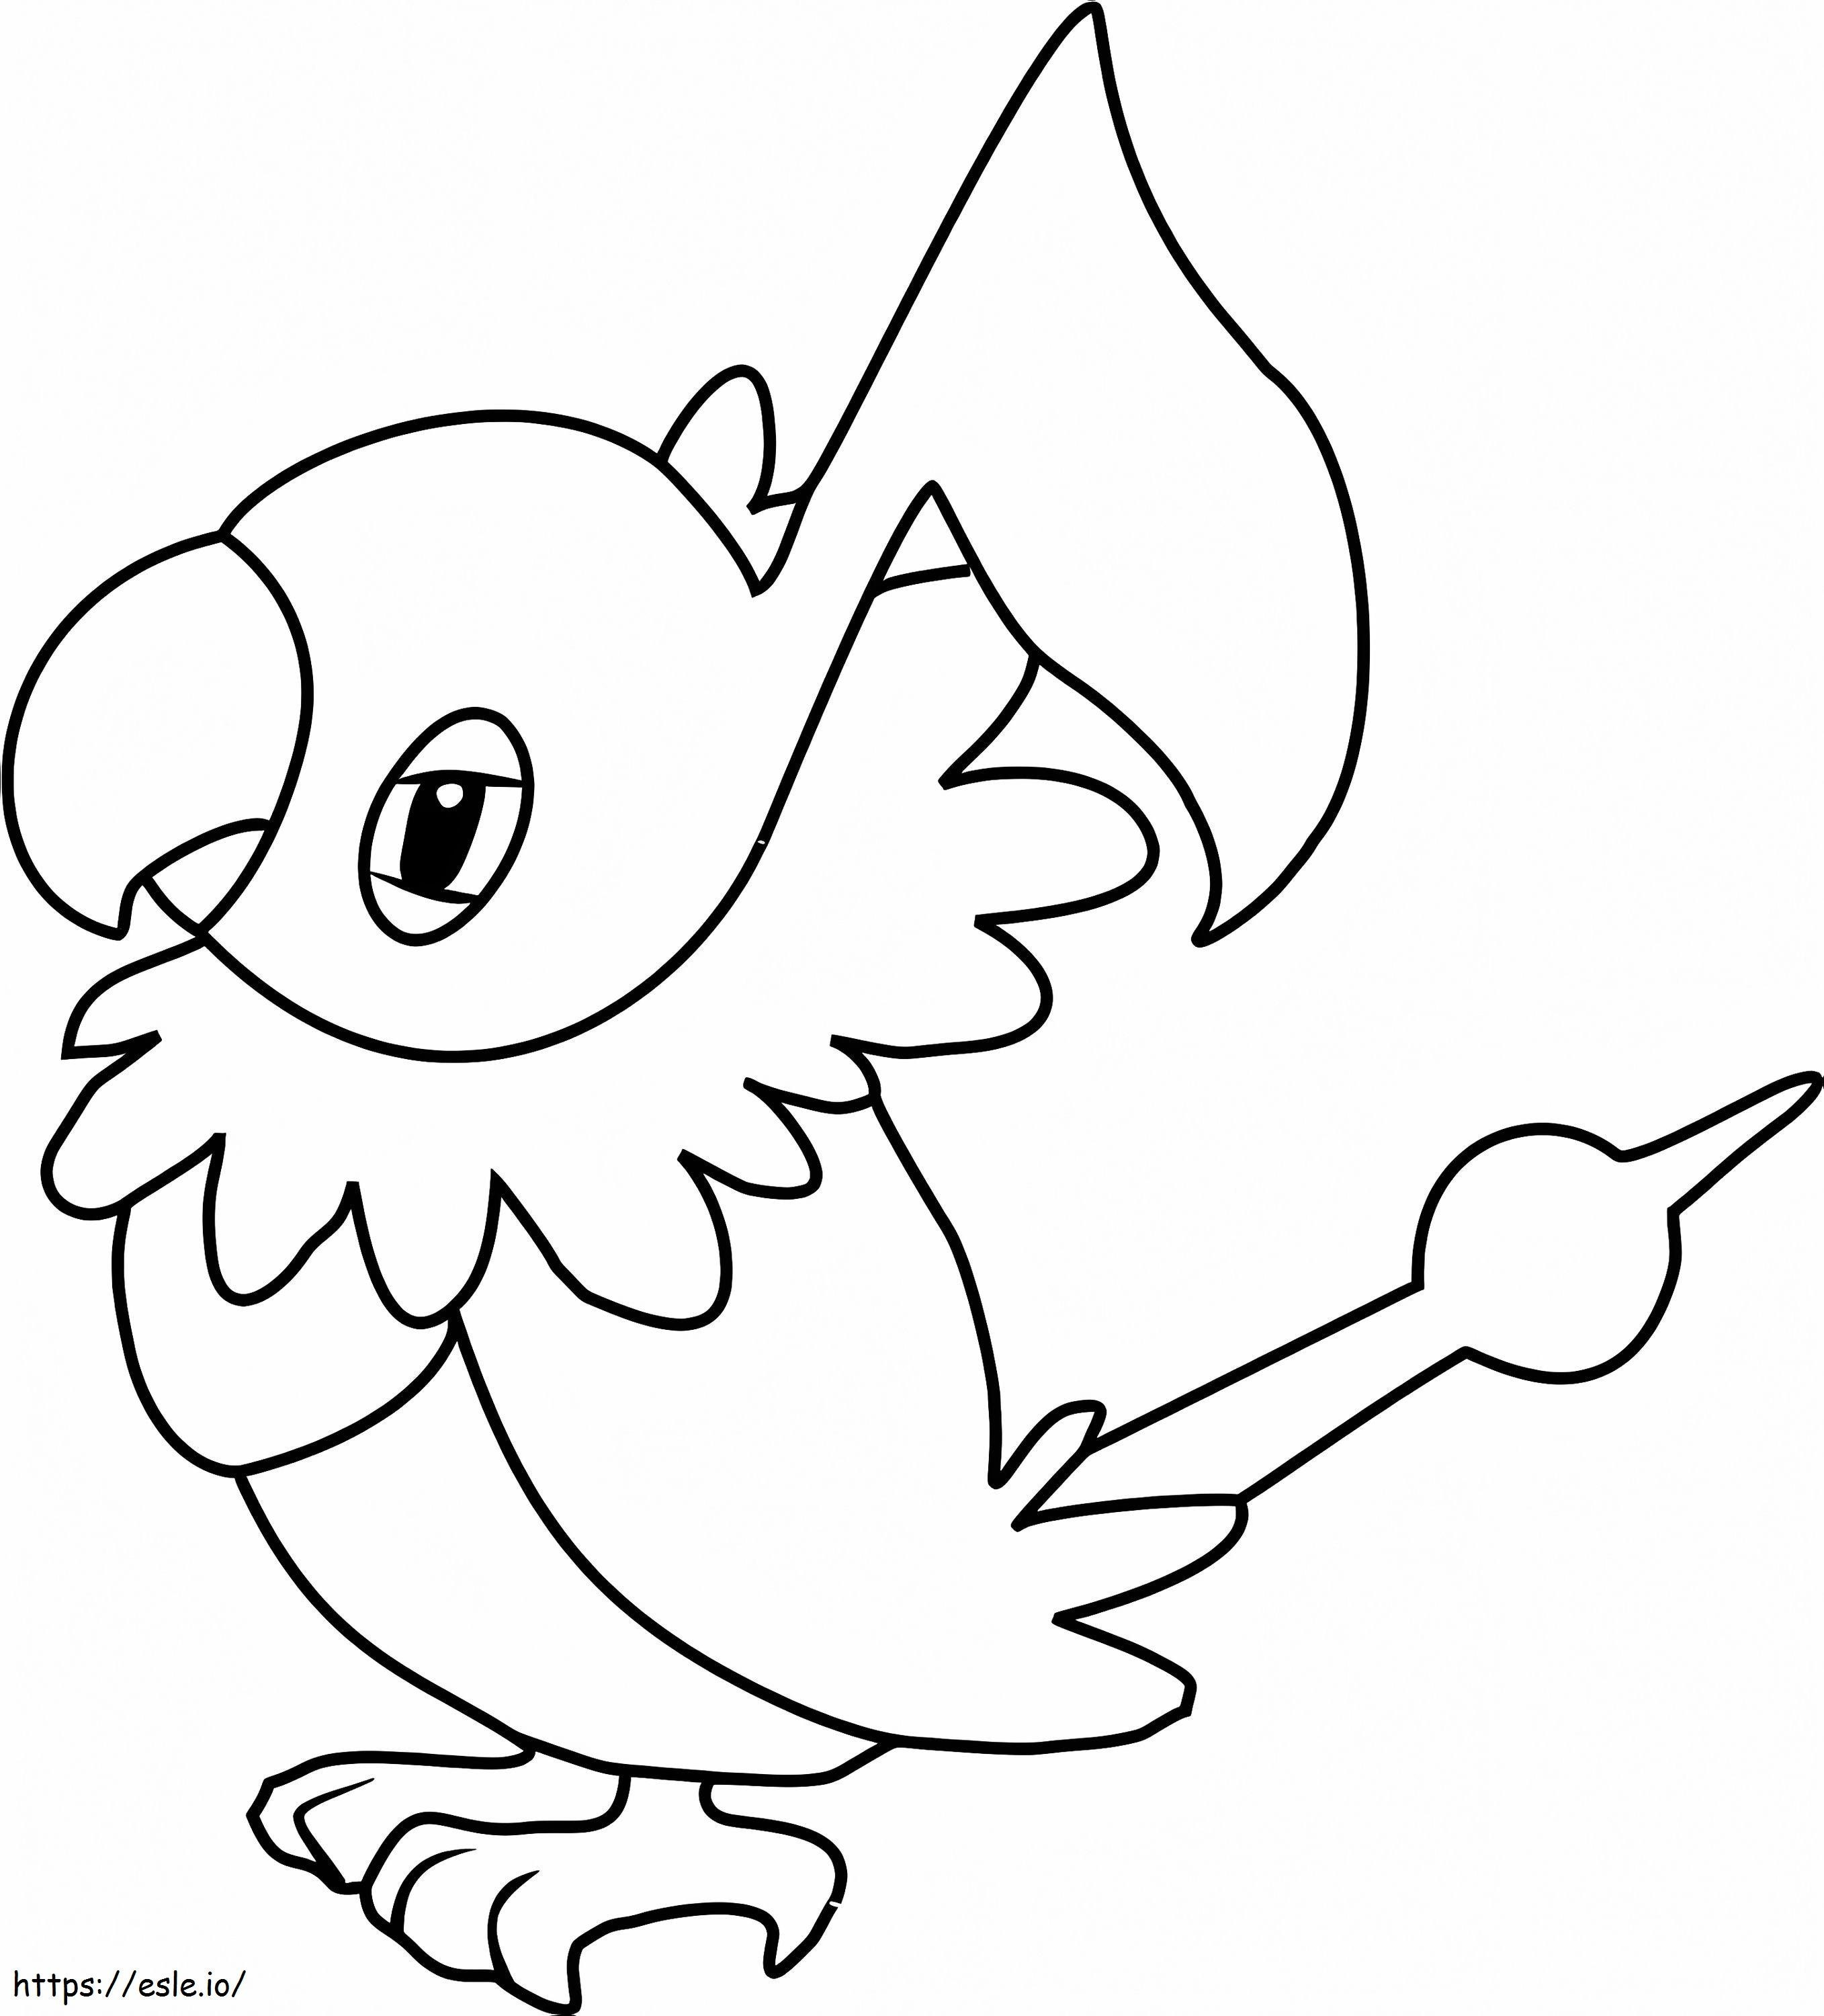 Coloriage Chatot Gen 4 Pokemon à imprimer dessin